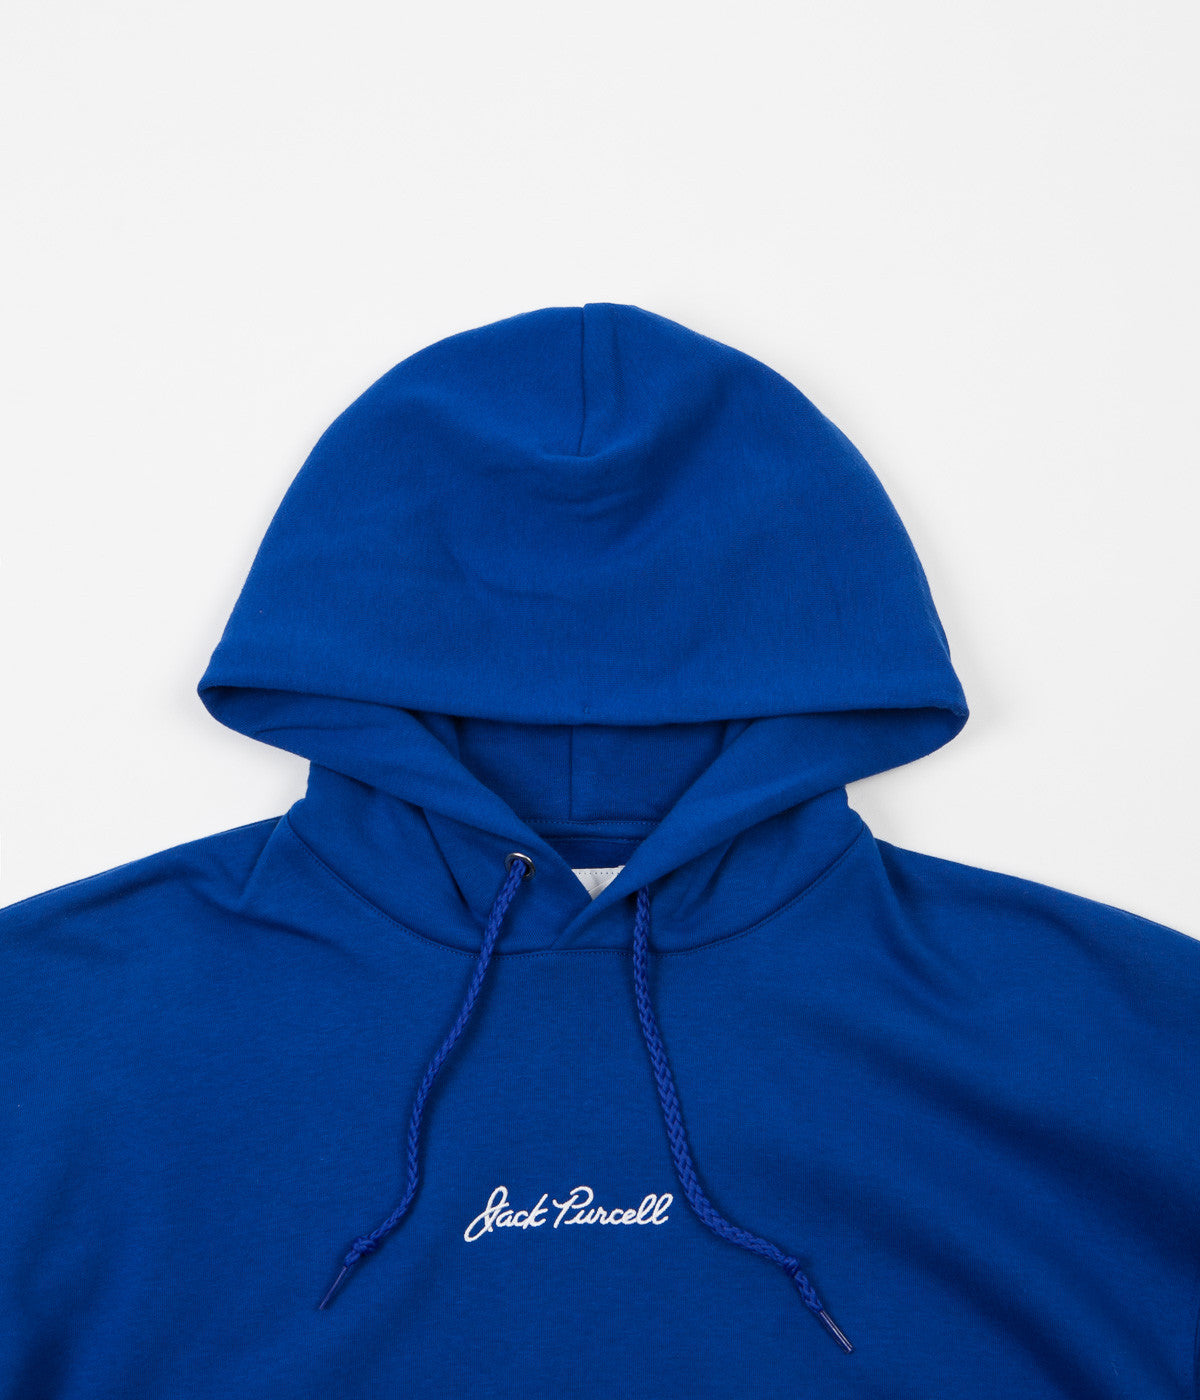 converse hoodie blue